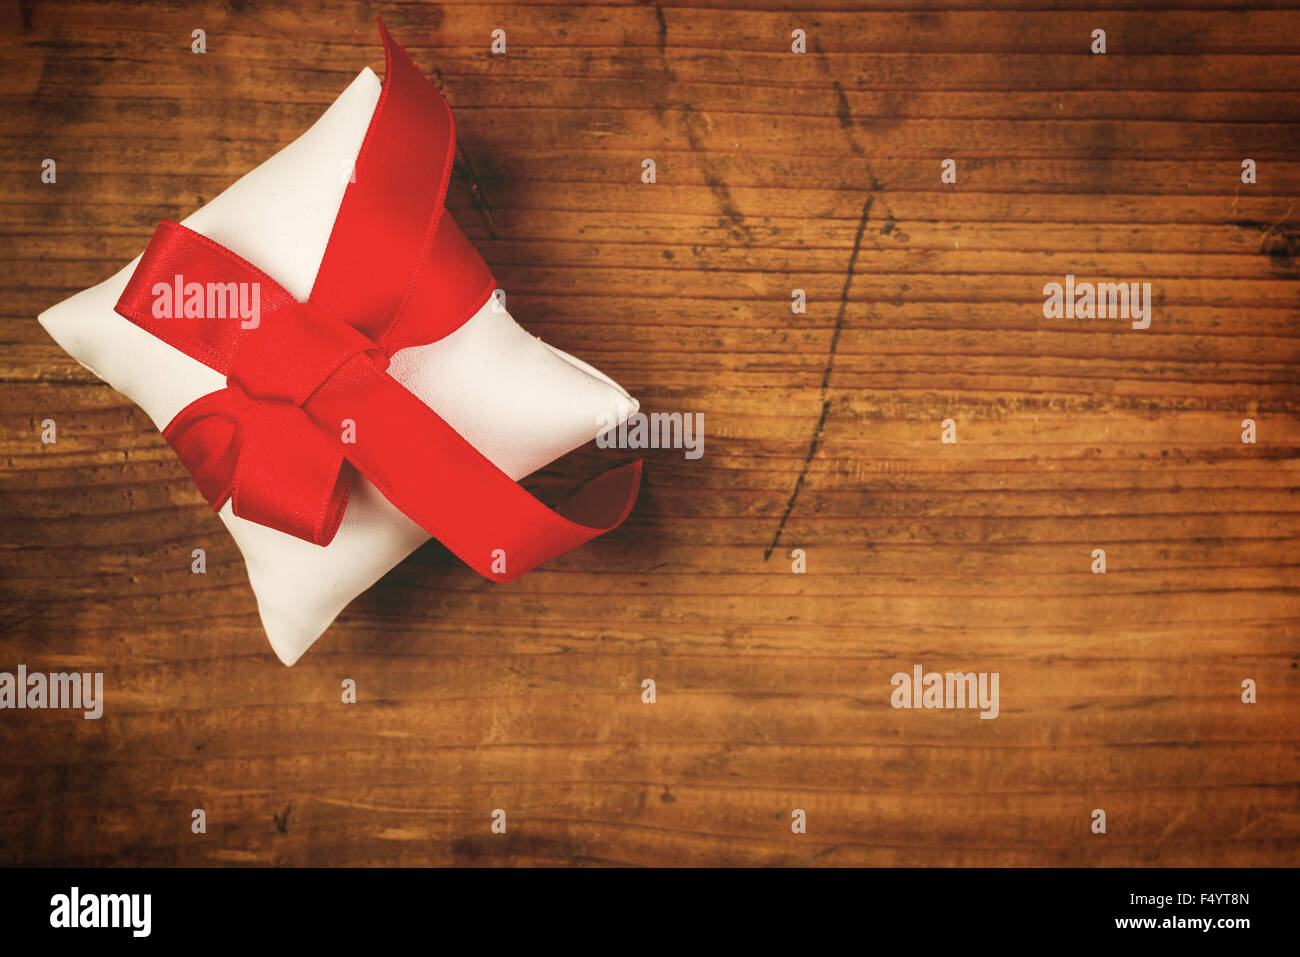 Cadeau de Noël enroulé et attaché avec un ruban rouge sur de vieux bois de chêne 24, Vue de dessus, l'espace de copie aux couleurs rétro, selective focus Banque D'Images